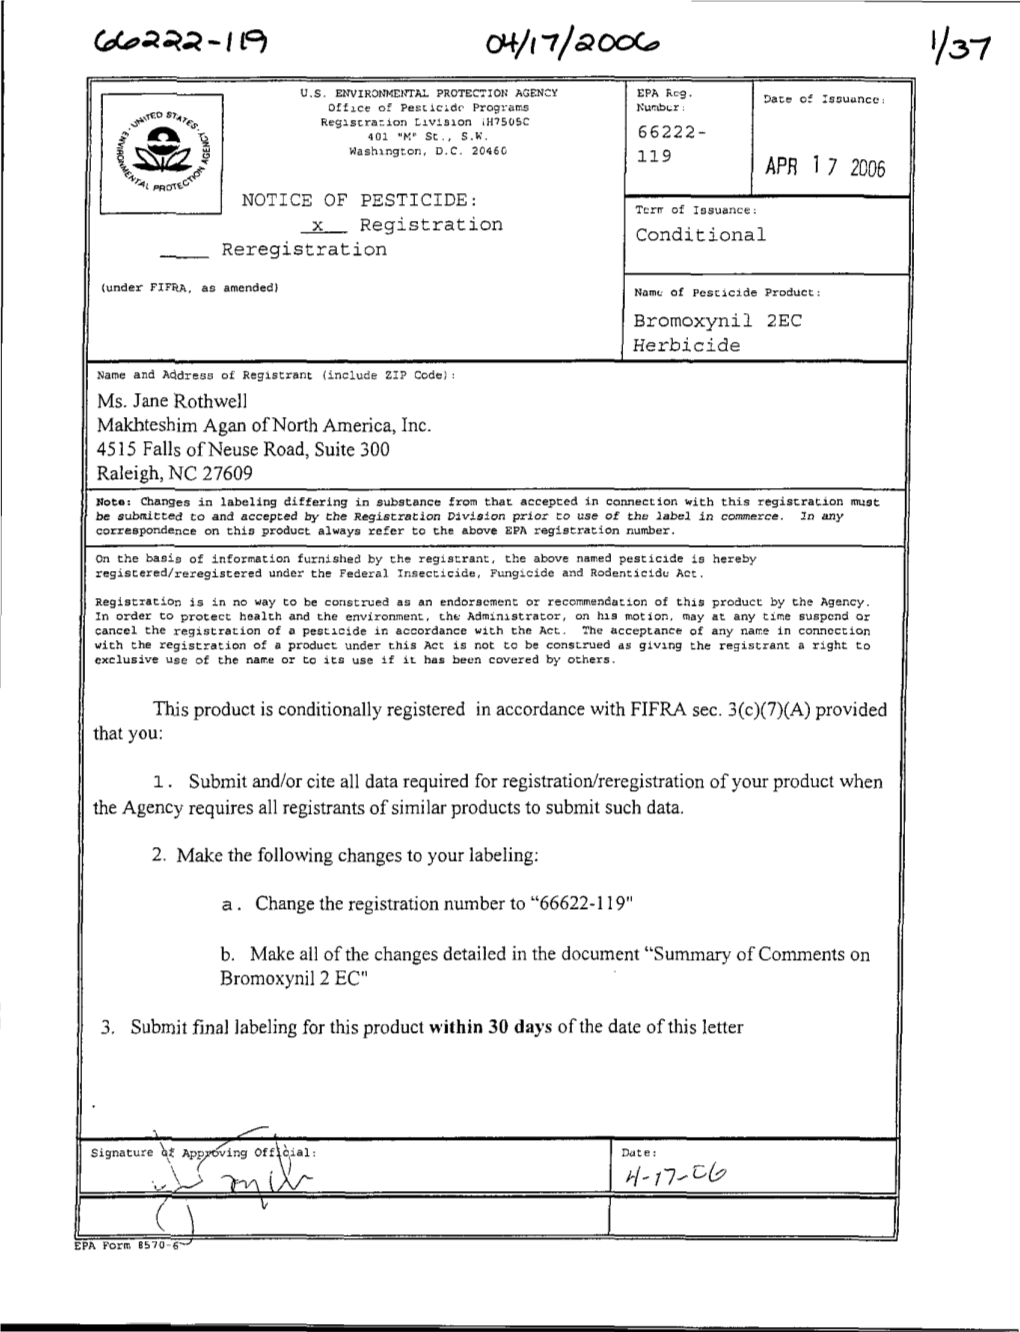 U.S. EPA, Pesticide Product Label, BROMOXYNIL 2EC HERBICIDE, 04/17/2006